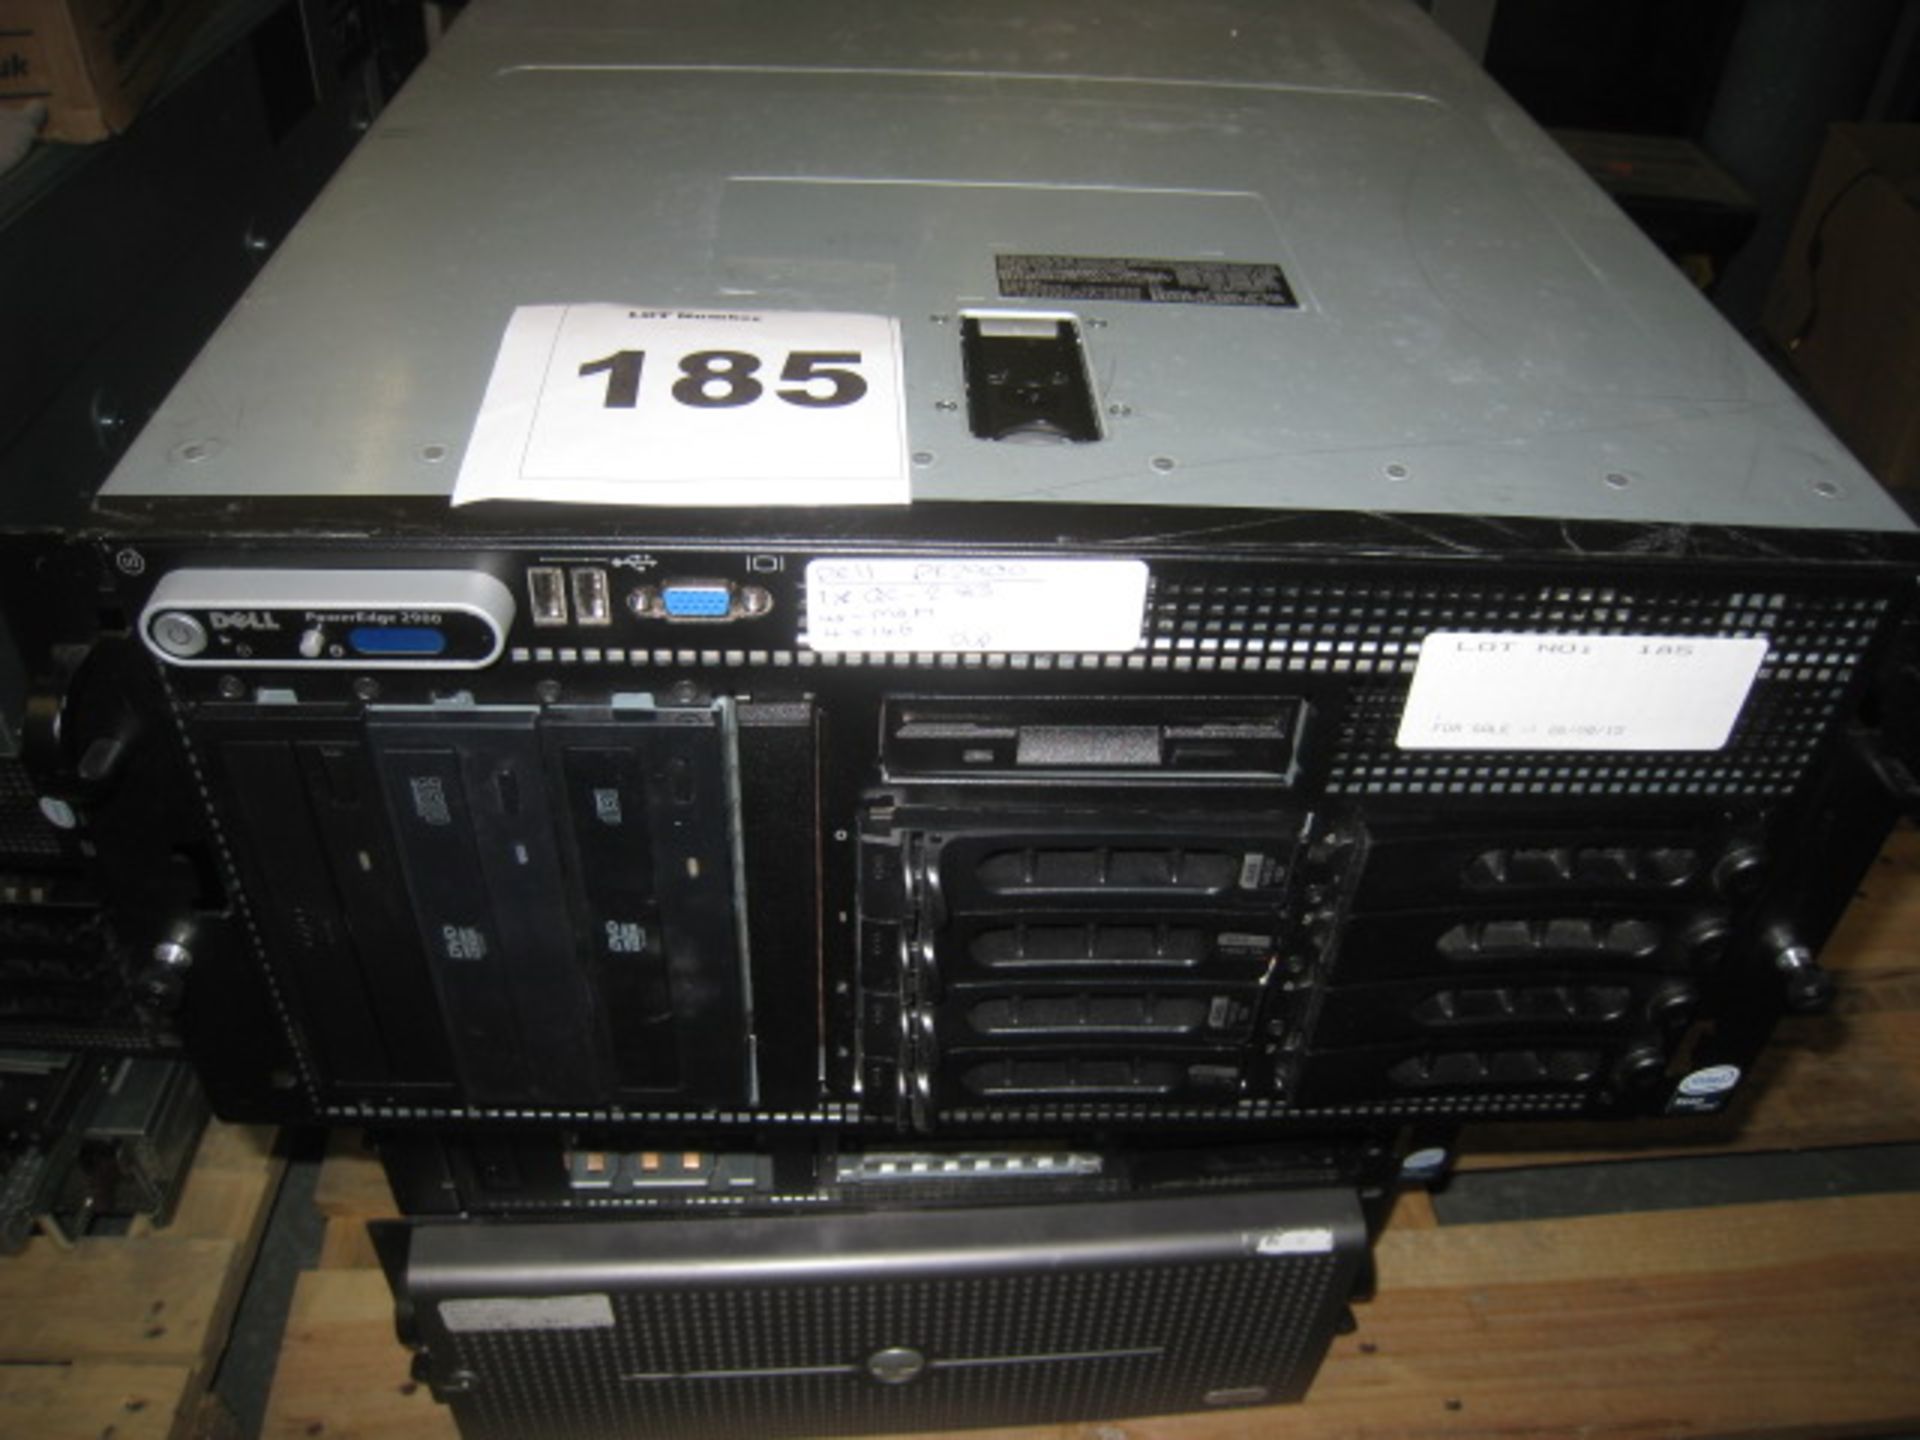 Dell Poweredge 1950 5U file server Quad-core 2.83ghz processorS, 4GB RAM, 4 X 146GB HDD'S. dvd-rom